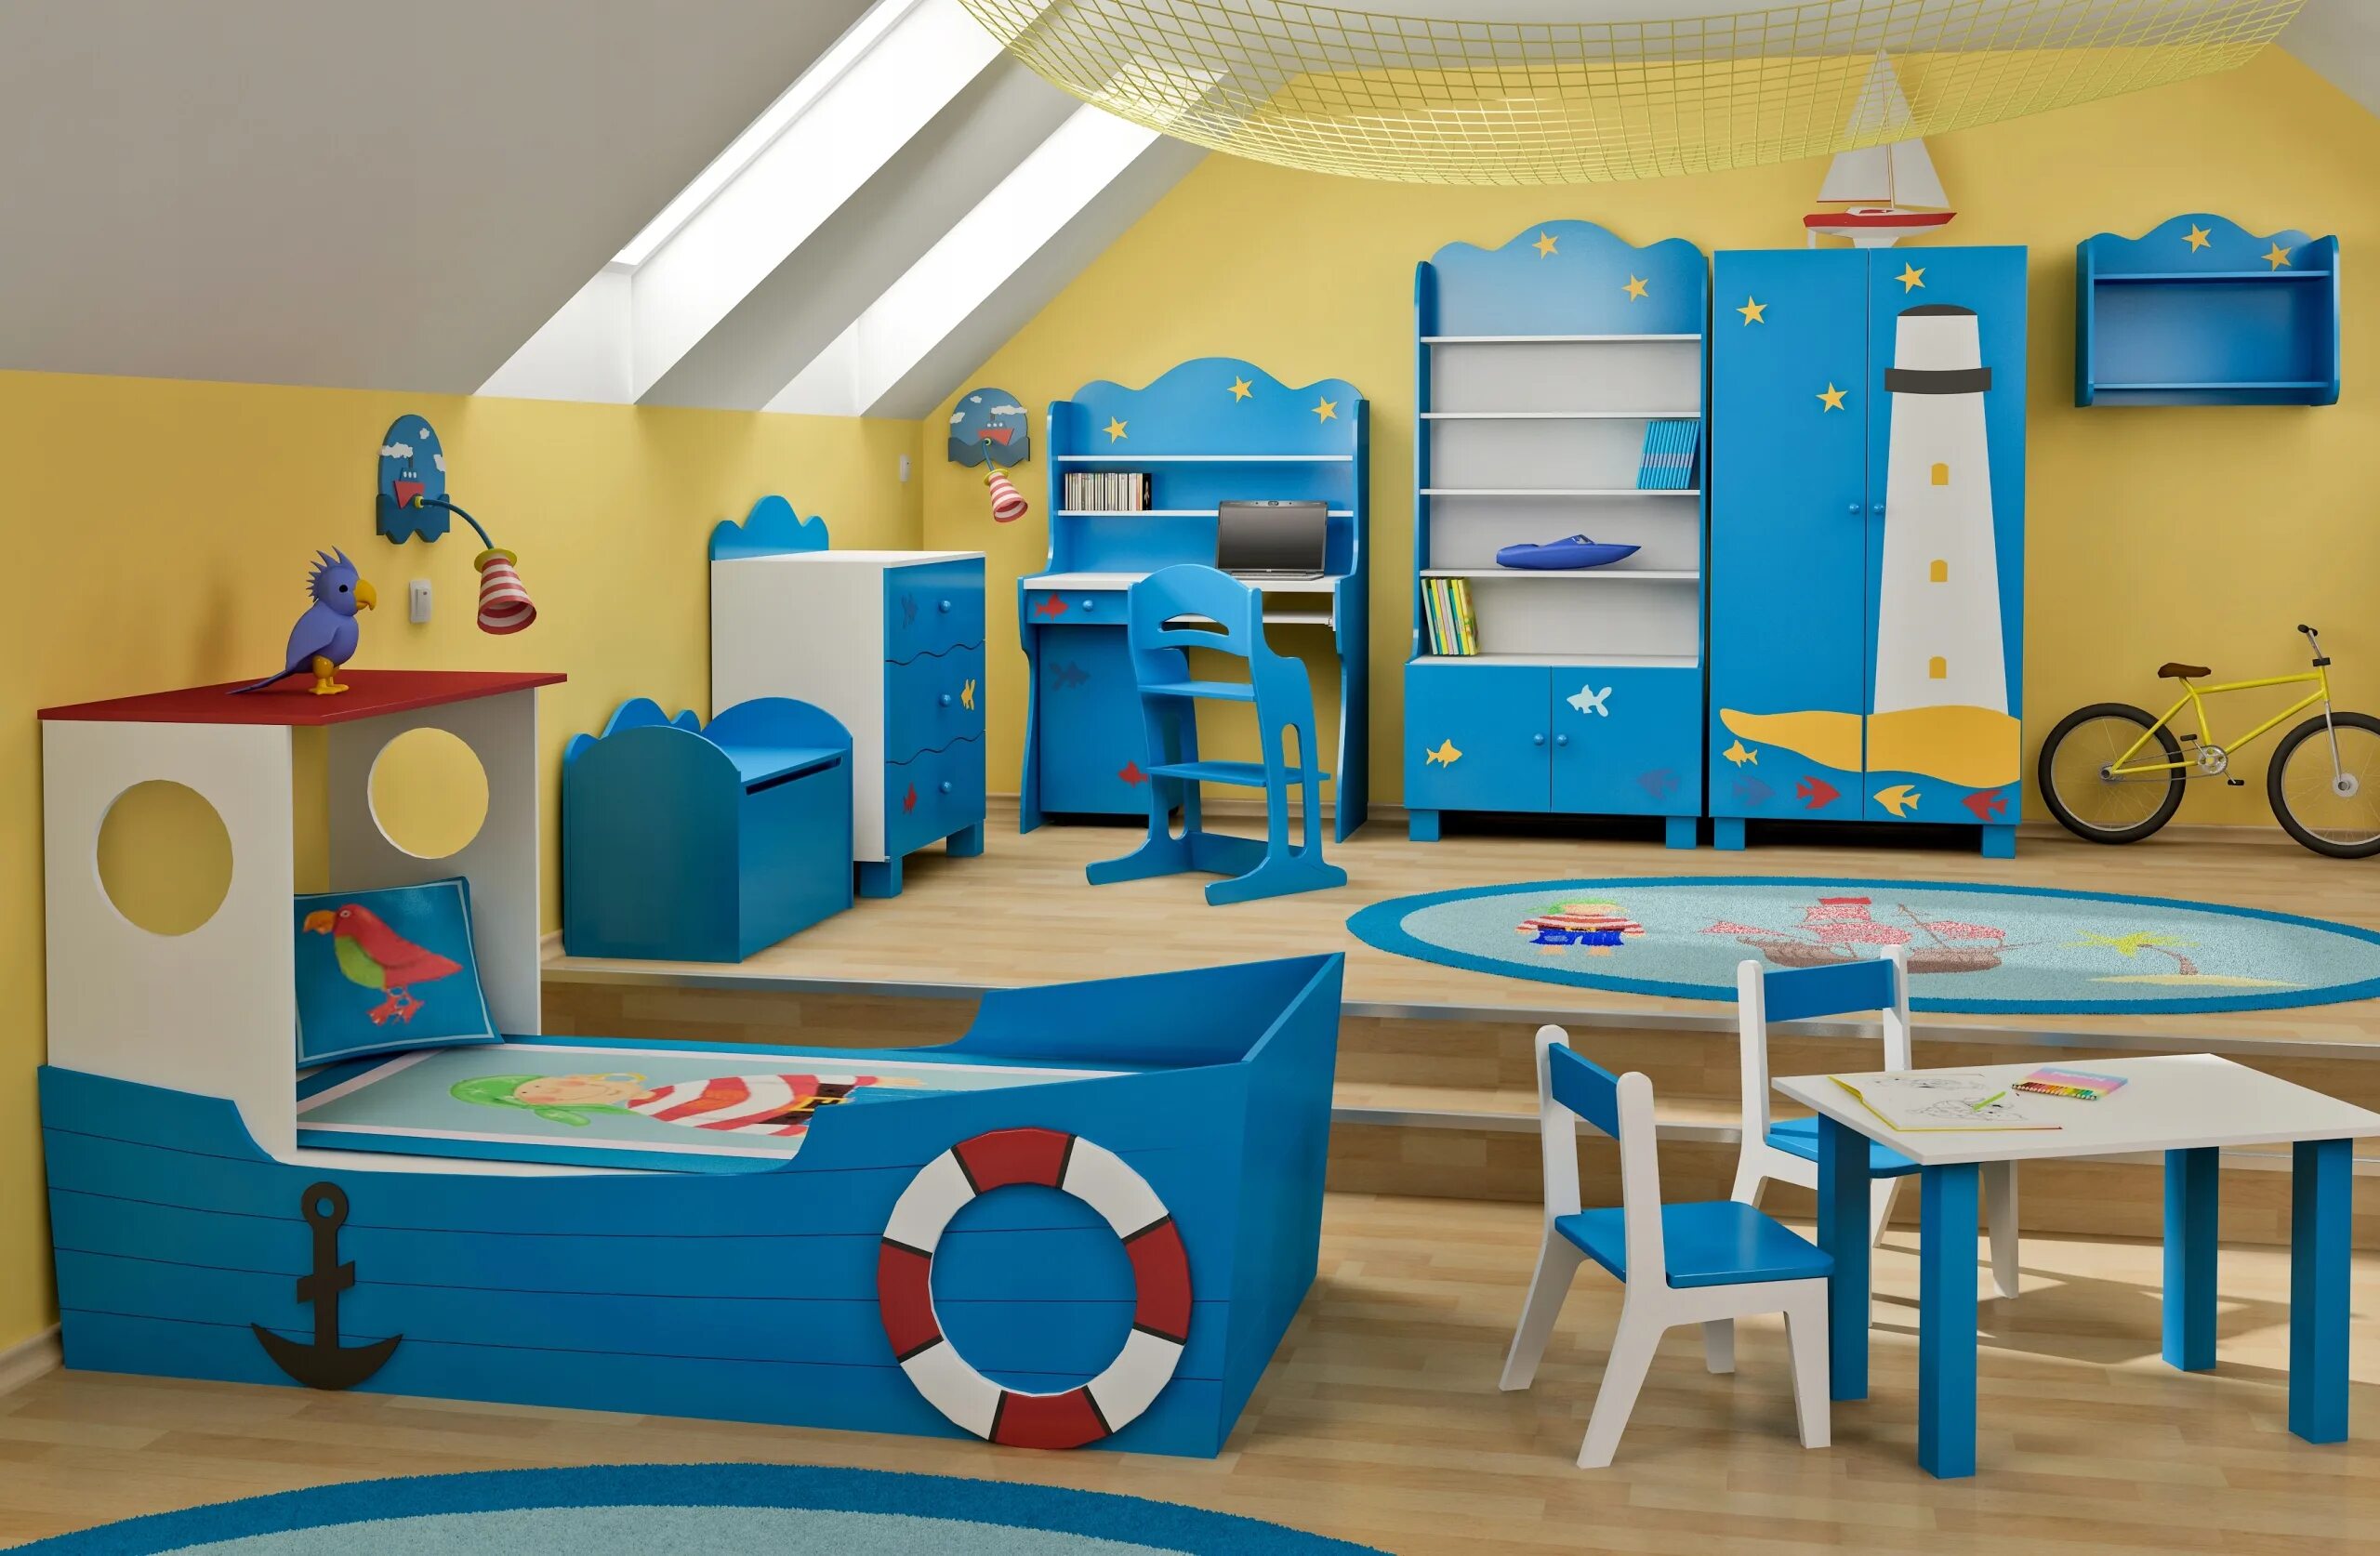 Мебель для детского сада. Дизайнерская мебель для детского сада. Мебель в игровую комнату для детей. Современная мебель для ДОУ.